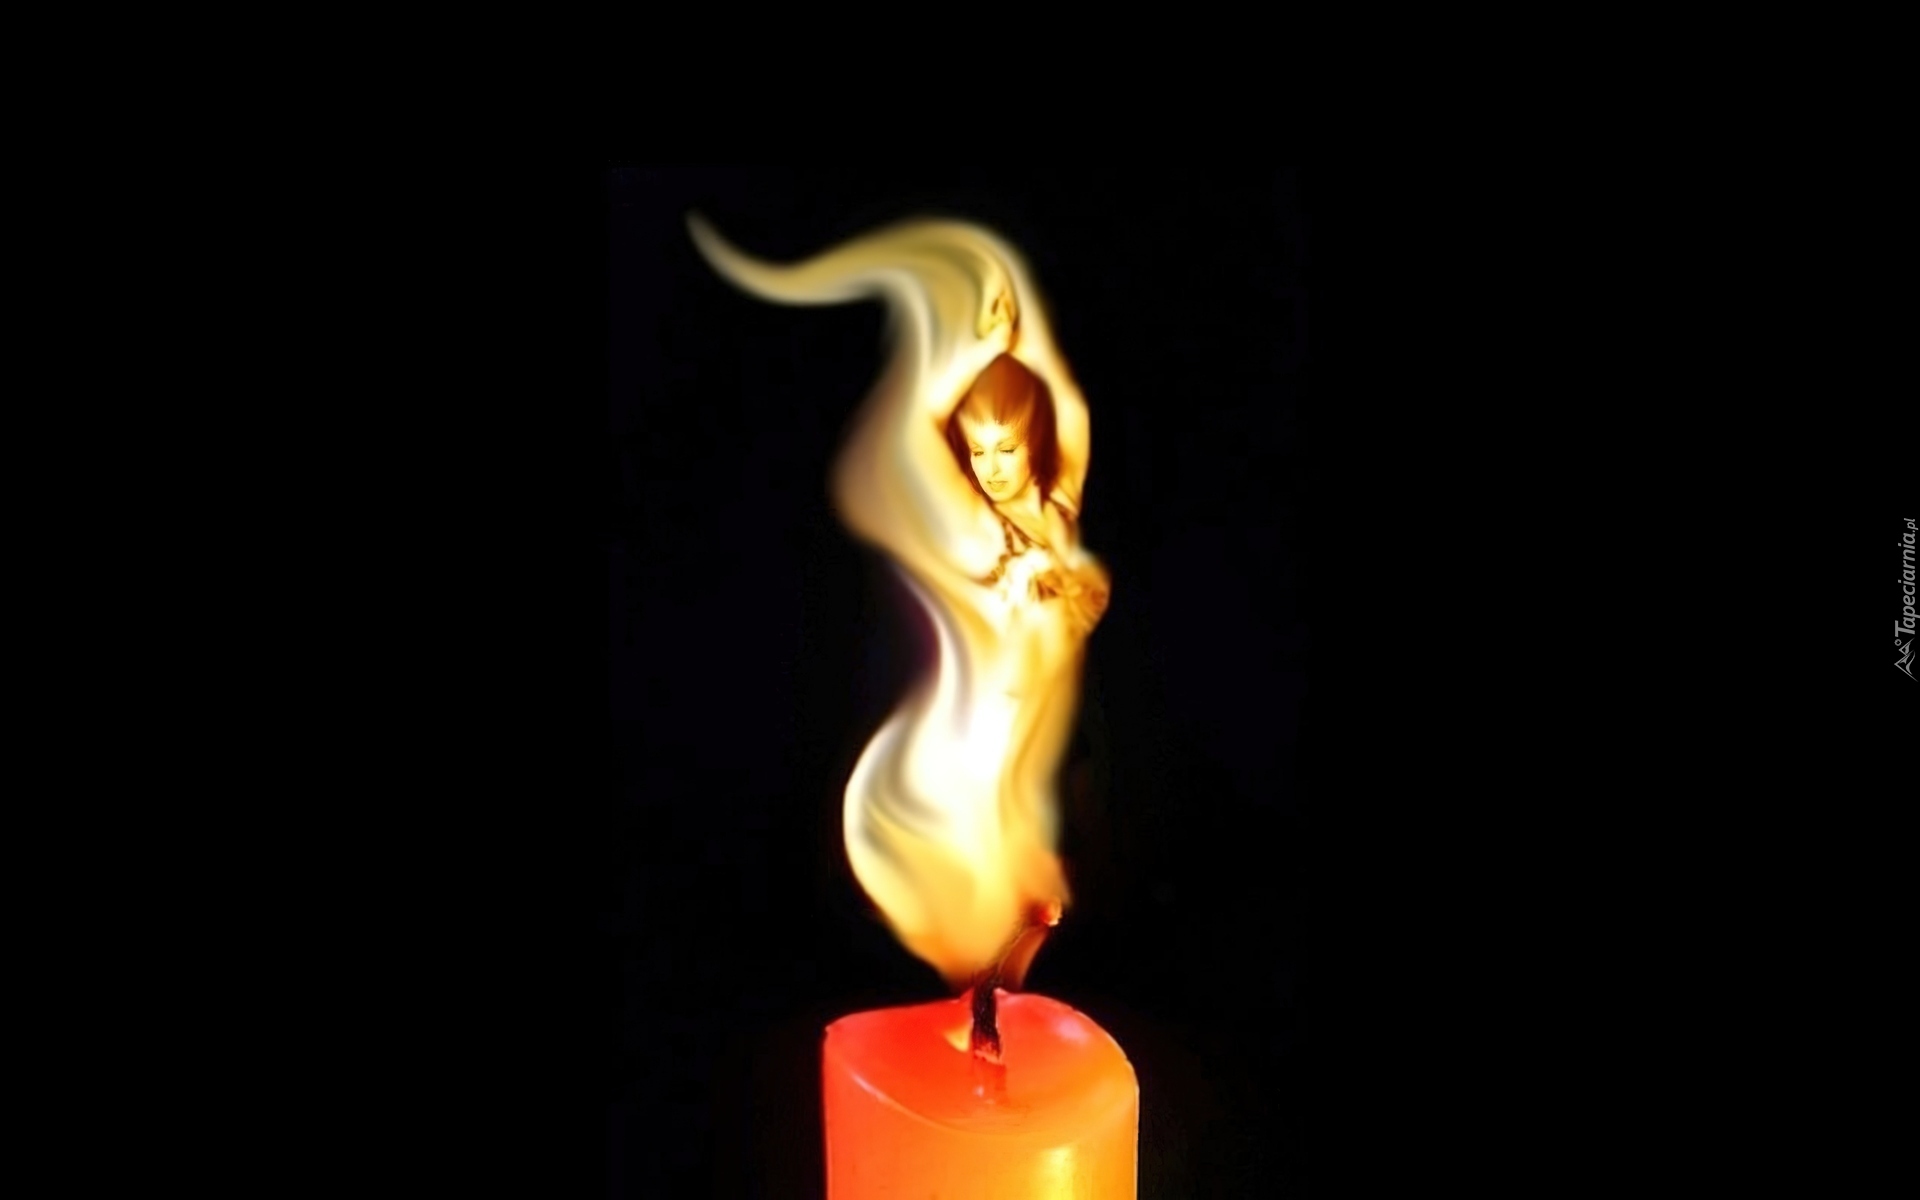 Лучше сгореть чем. Девушка в пламени свечи. Свечка потухла. Горящая свеча. Танец пламени свечи.